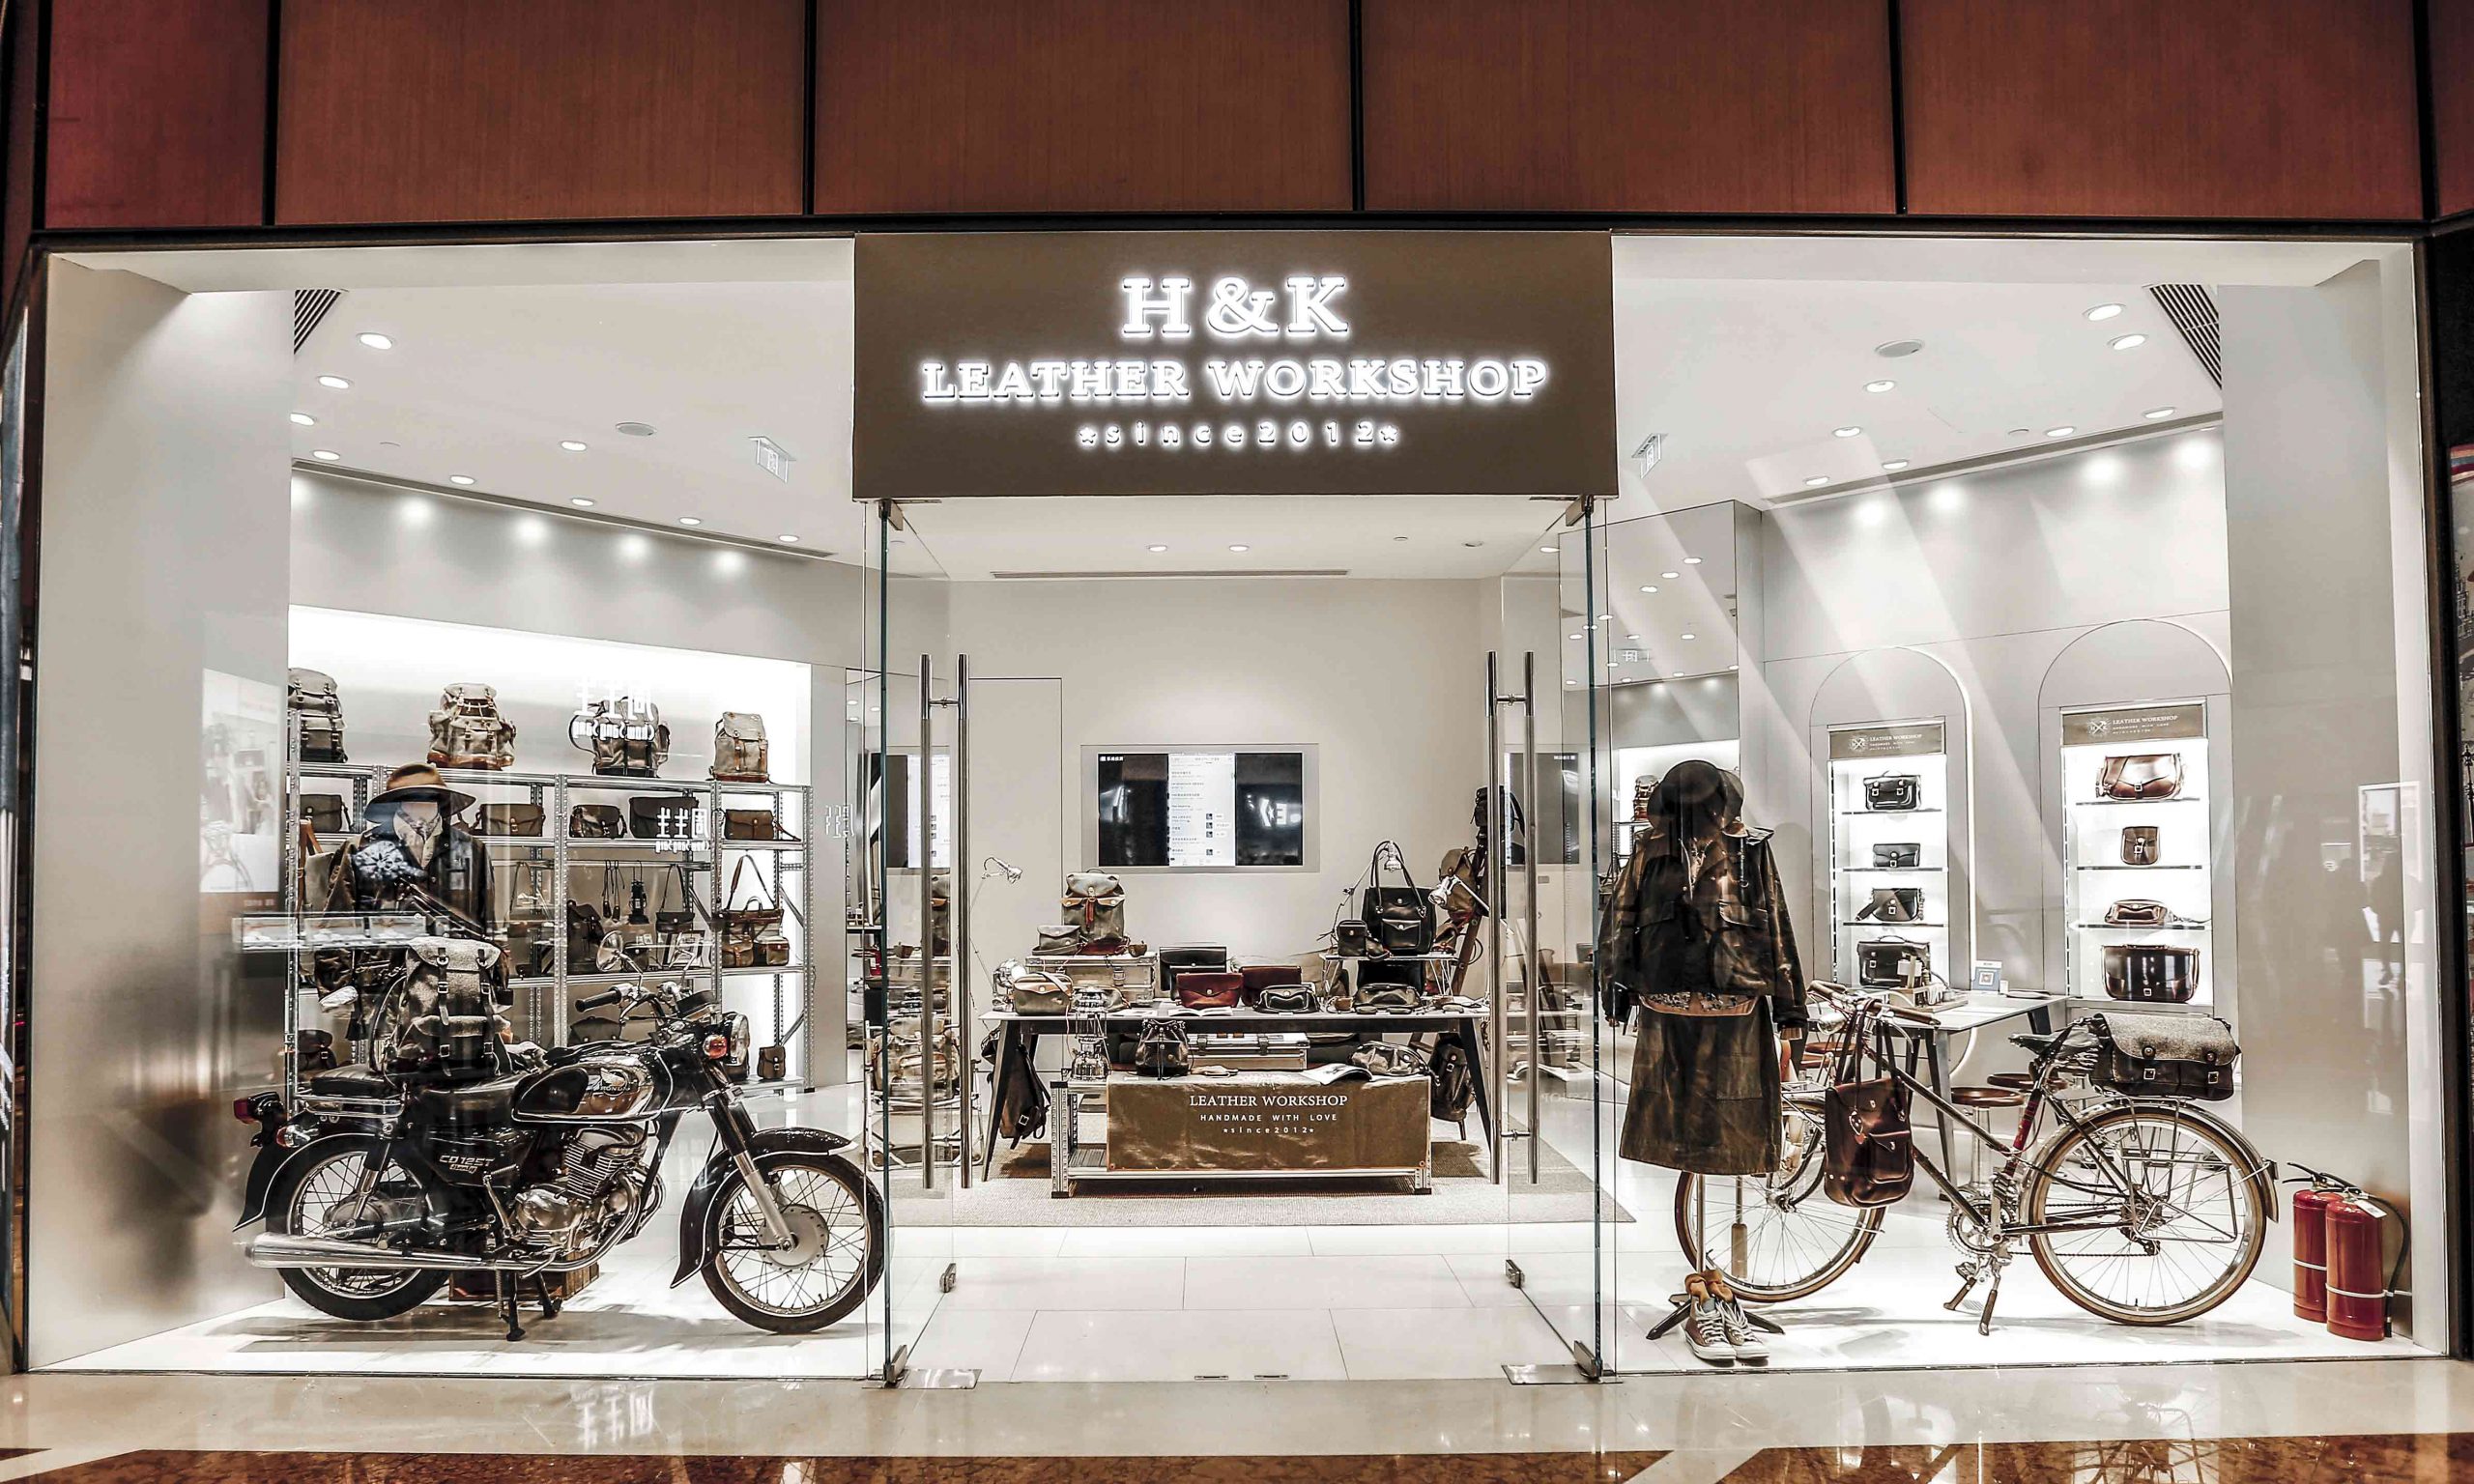 H&K Leather Workshop 北京王府中环店正式开业